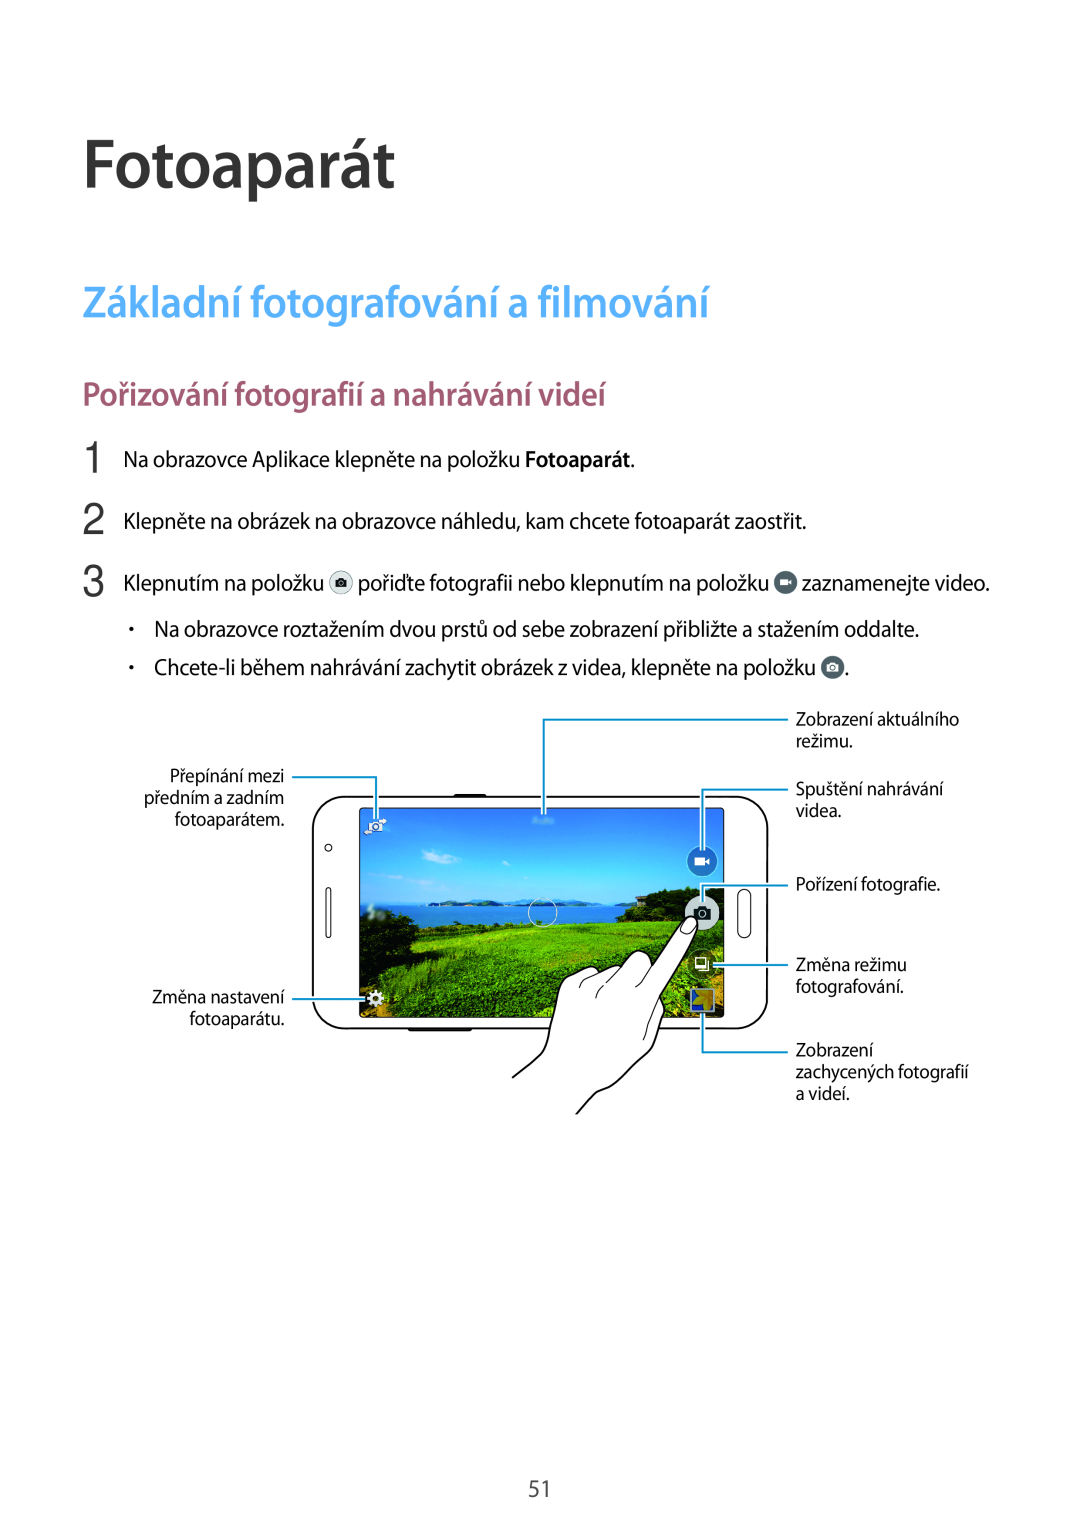 Samsung SM2G530FZAATMH manual Fotoaparát, Základní fotografování a filmování, Pořizování fotografií a nahrávání videí 